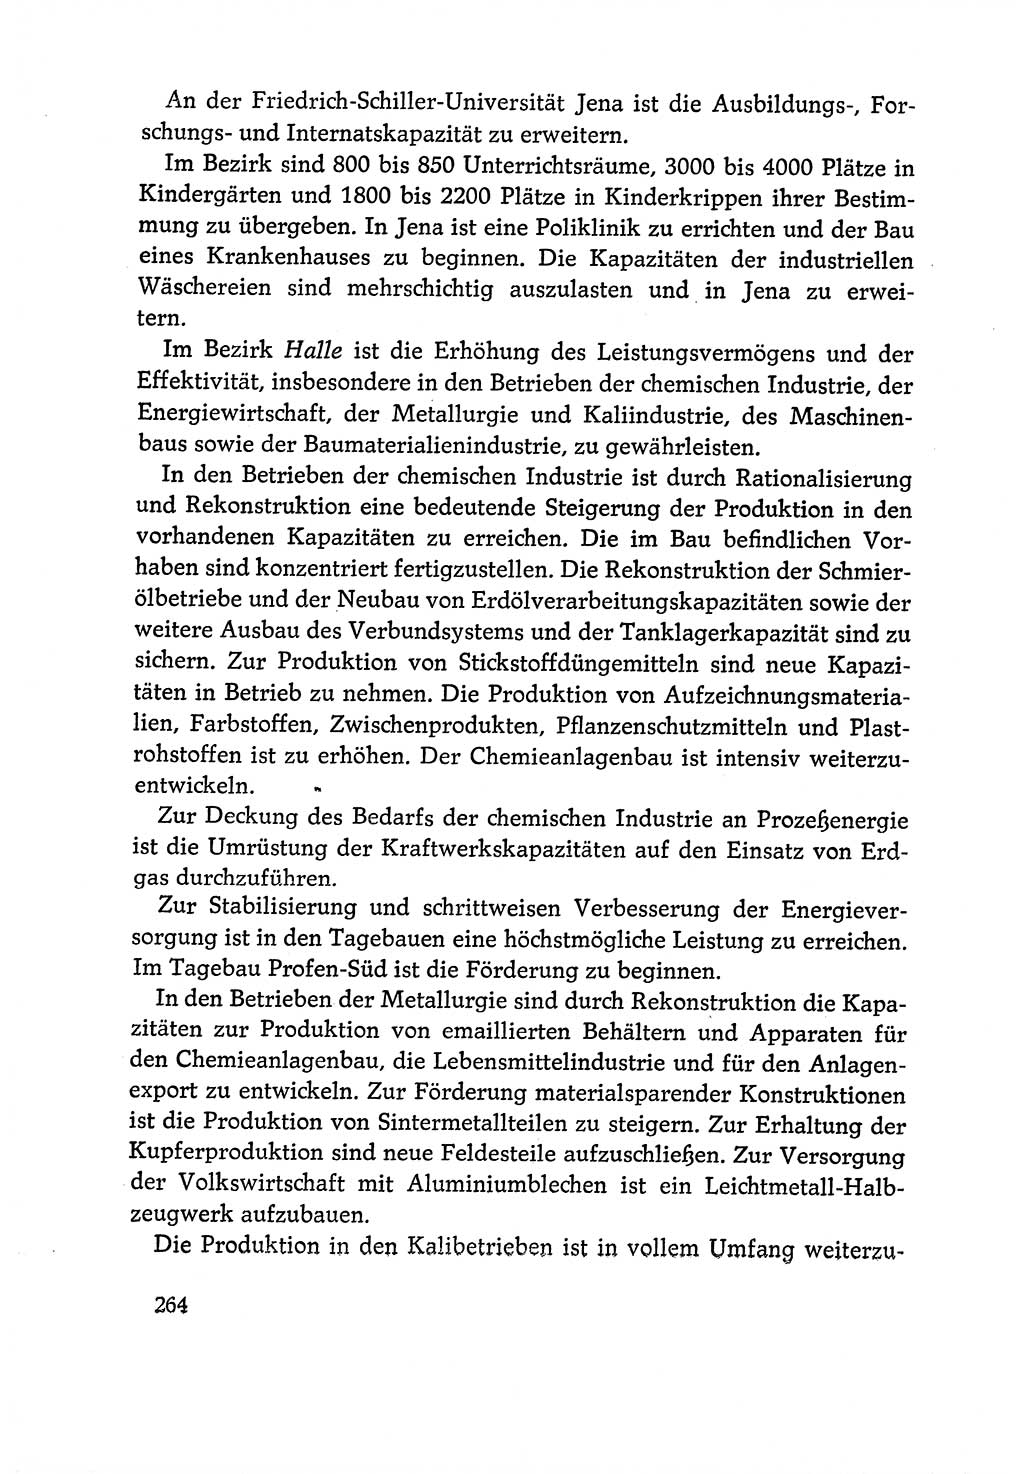 Dokumente der Sozialistischen Einheitspartei Deutschlands (SED) [Deutsche Demokratische Republik (DDR)] 1970-1971, Seite 264 (Dok. SED DDR 1970-1971, S. 264)